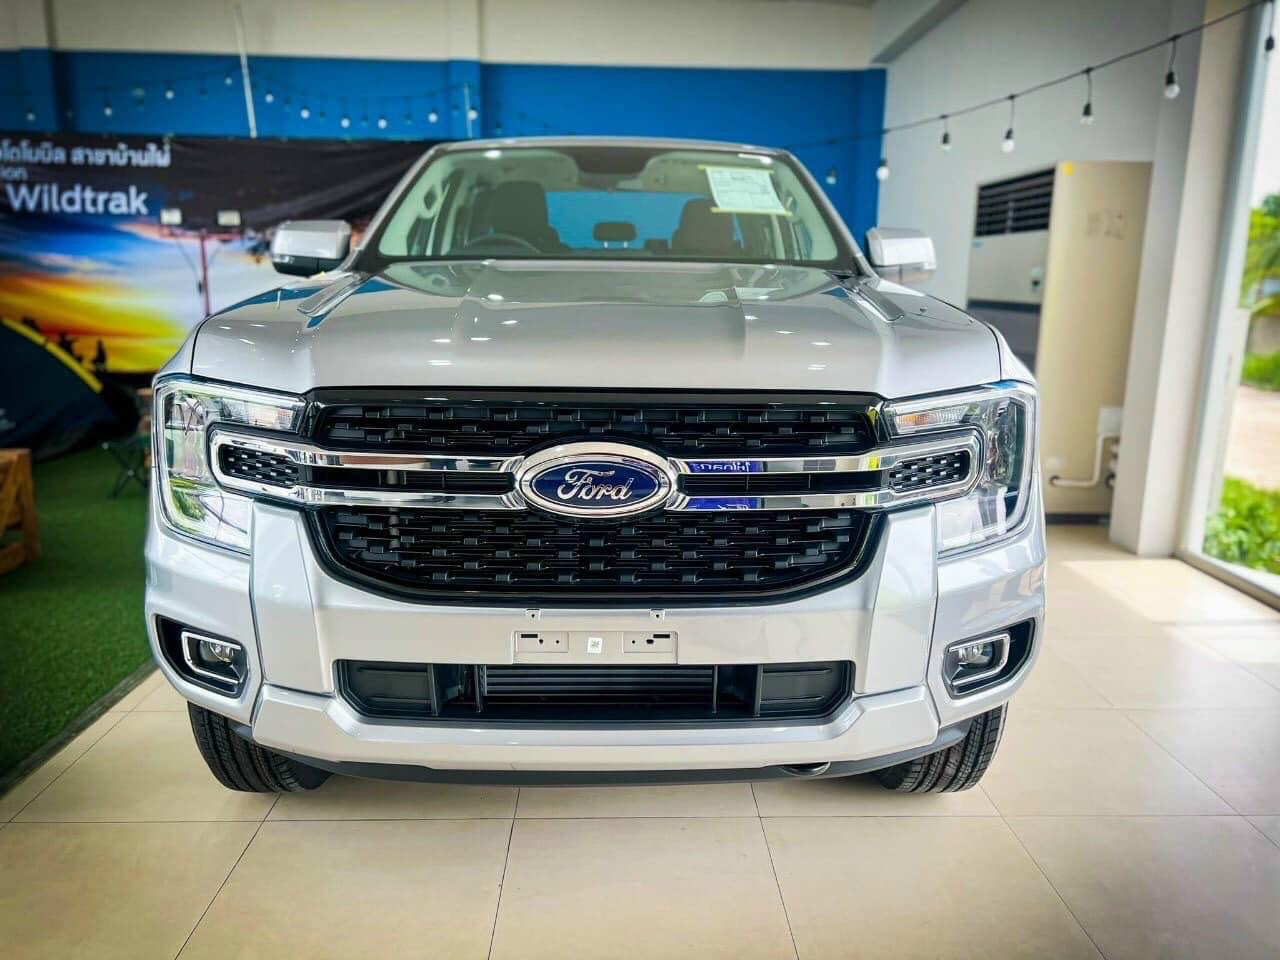 Ford Ranger XLT 20192020 review